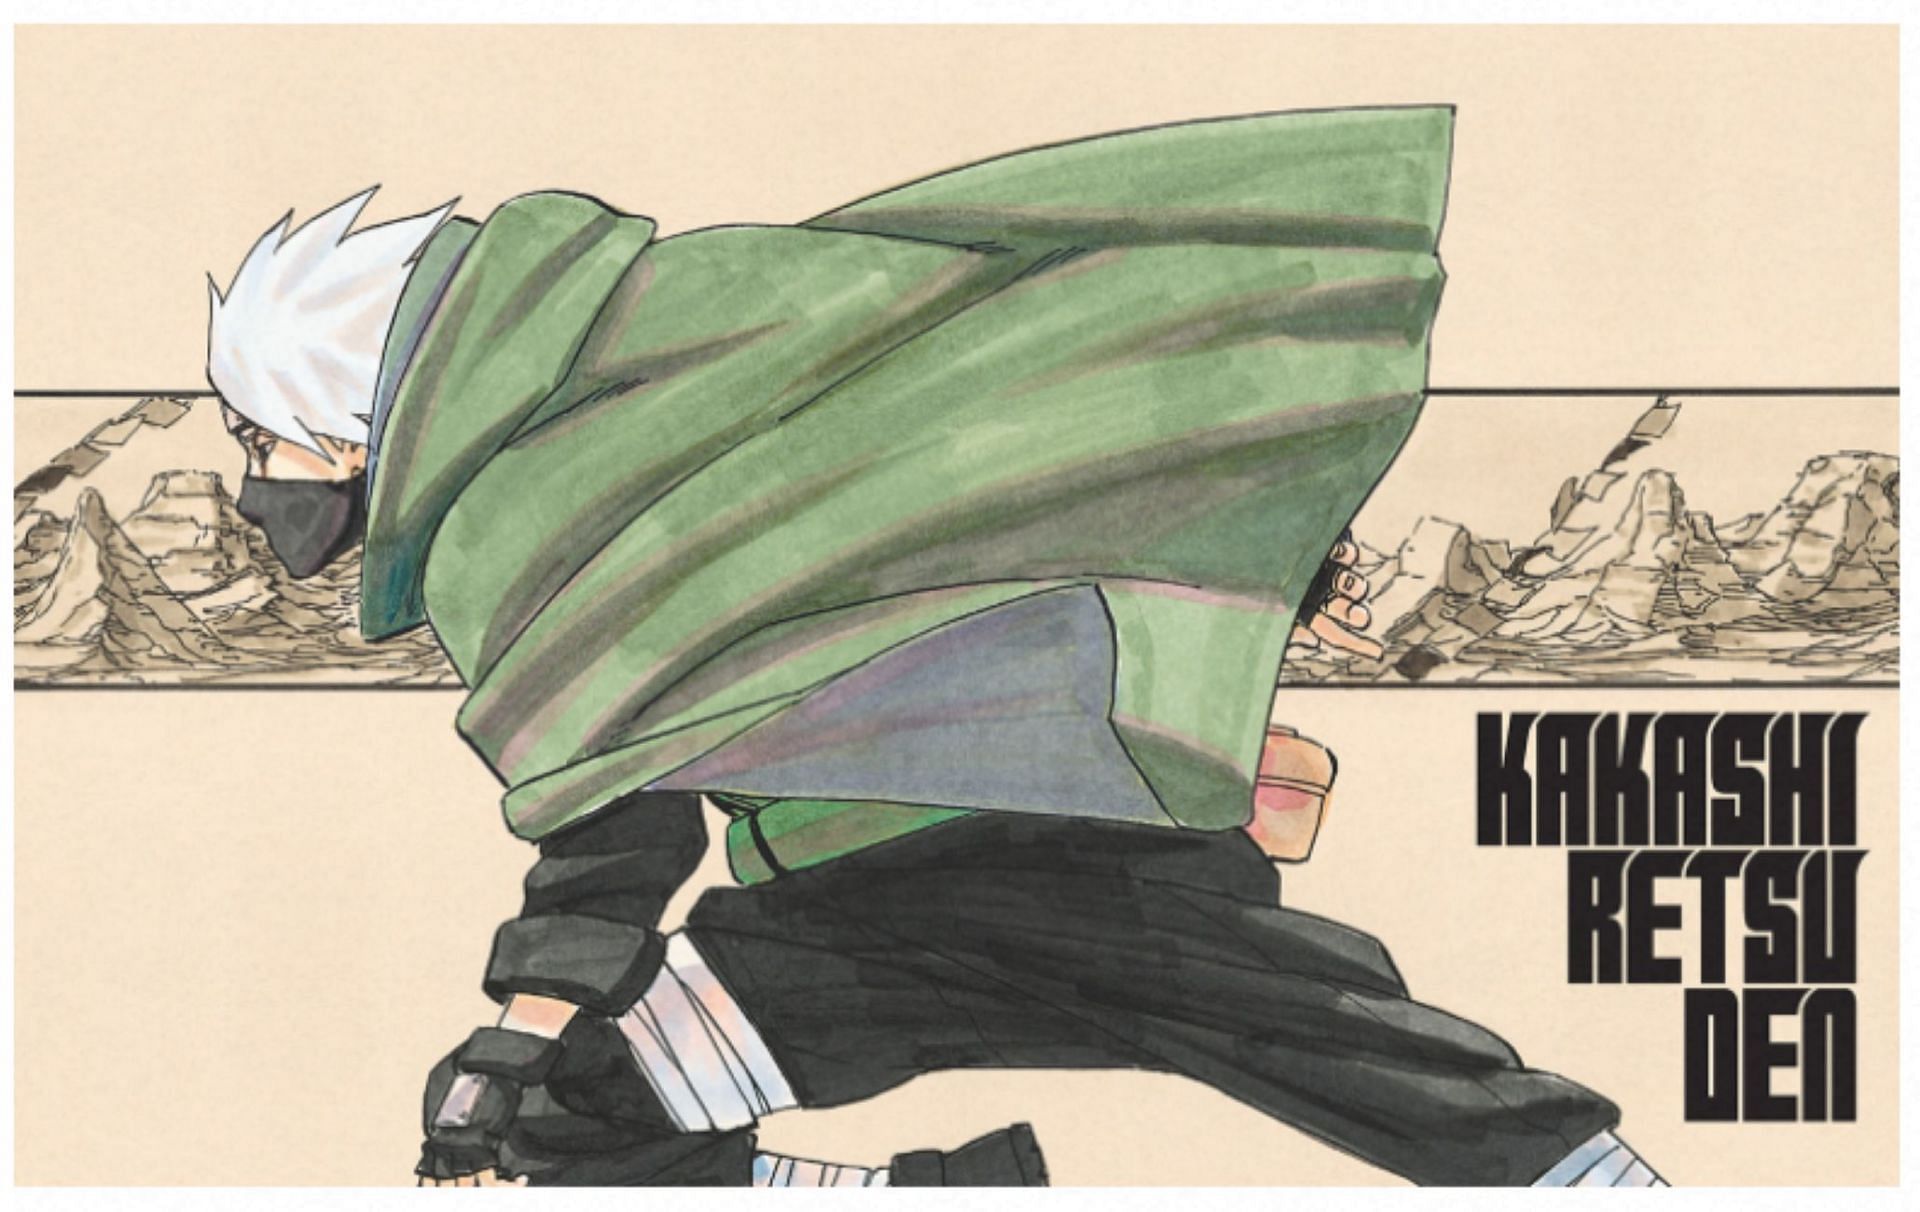 Kakashi Retsuden cover (Image via Masashi Kishimoto/Shueisha)